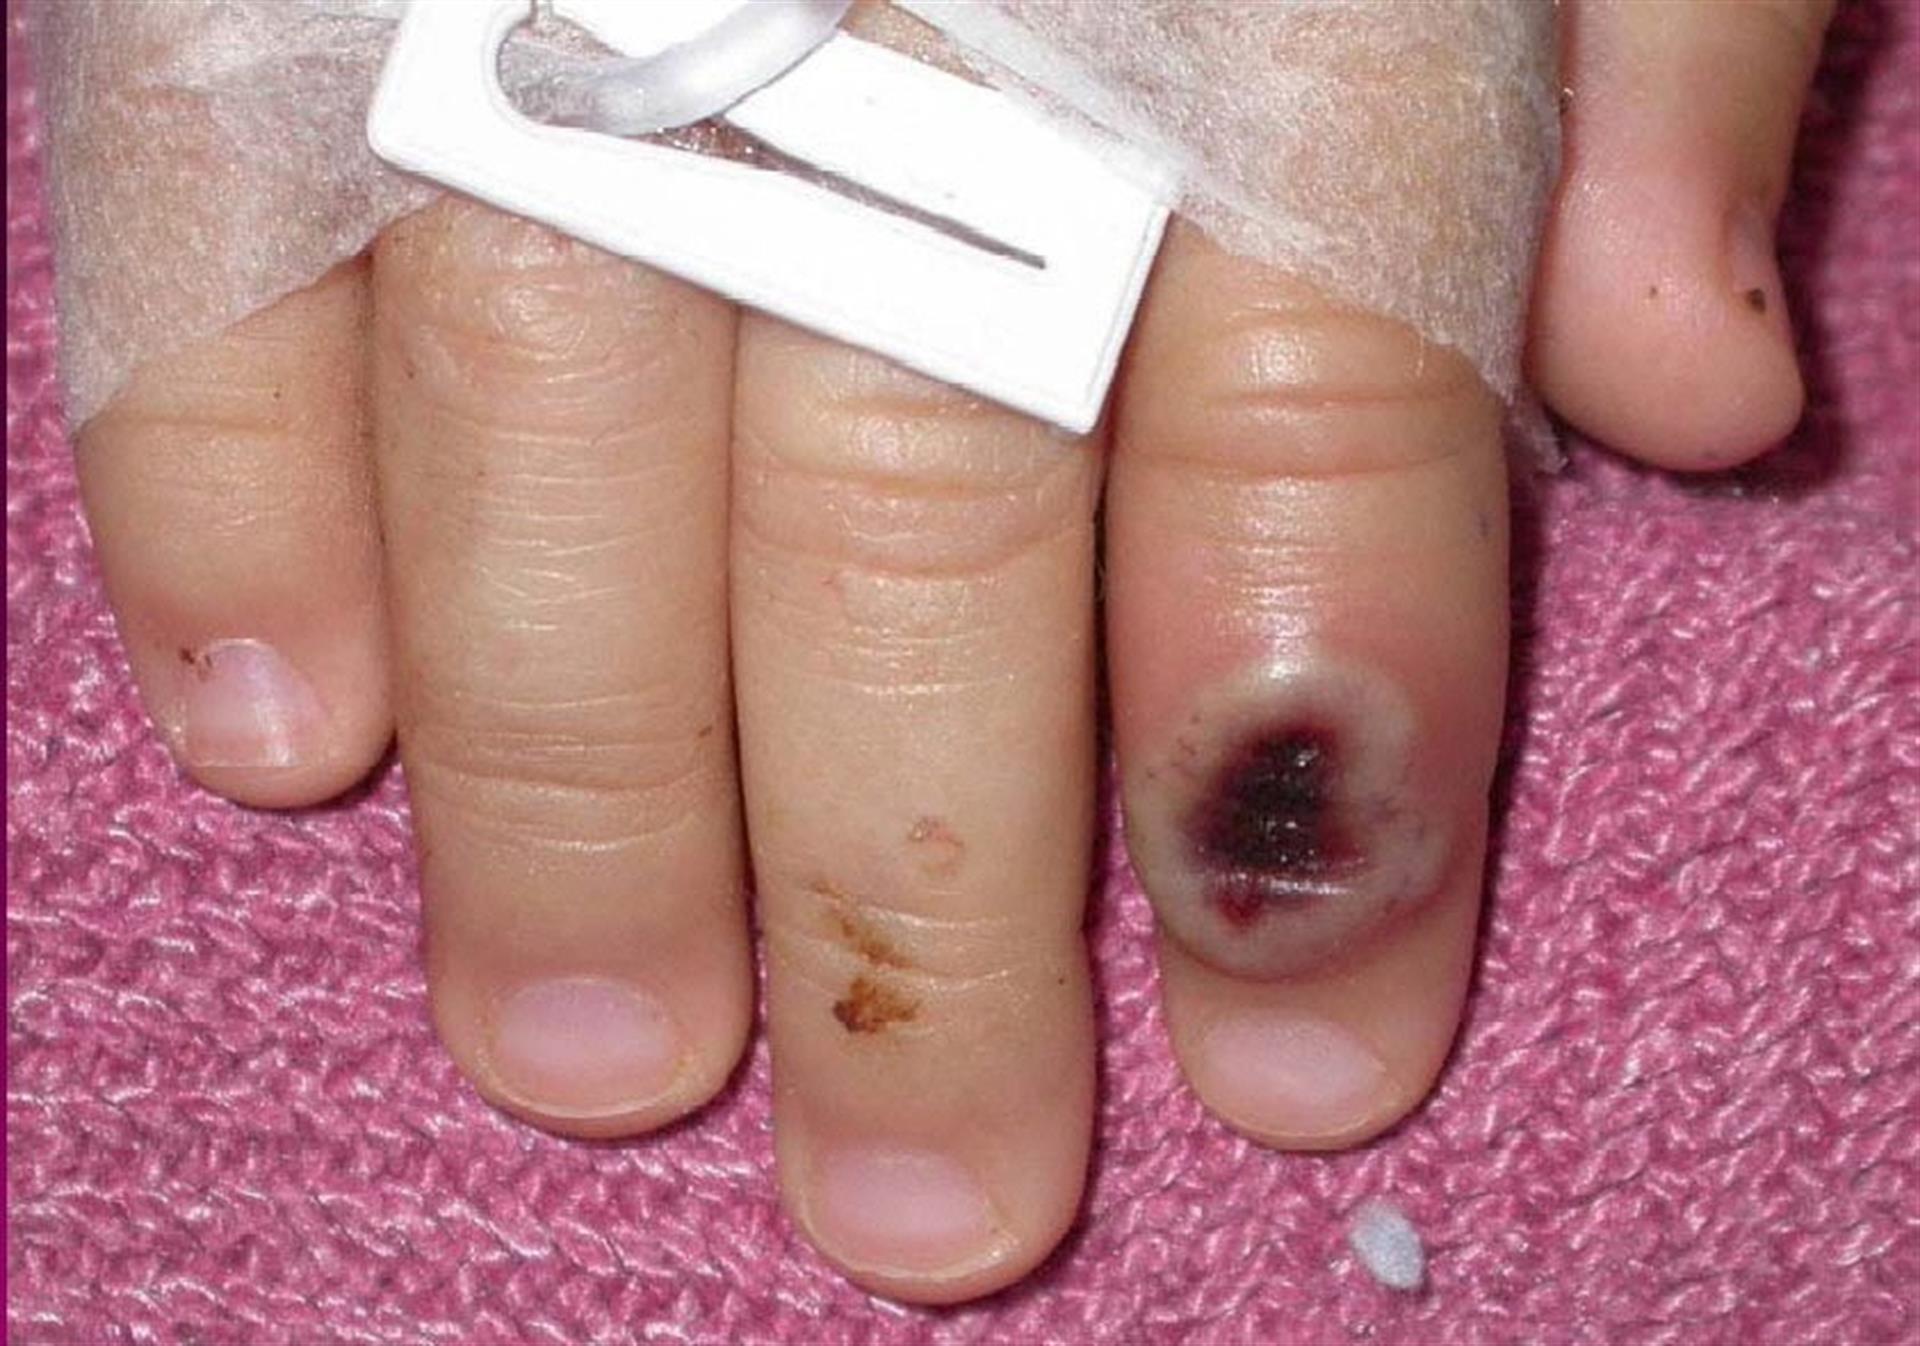 Fotografía del Centro Estadounidense de Control de las Enfermedades (CDC) en la que se aprecia el dedo de un niño infectado por la llamada ”viruela de mono” (monkeypox). EFE/Cortesía CDC